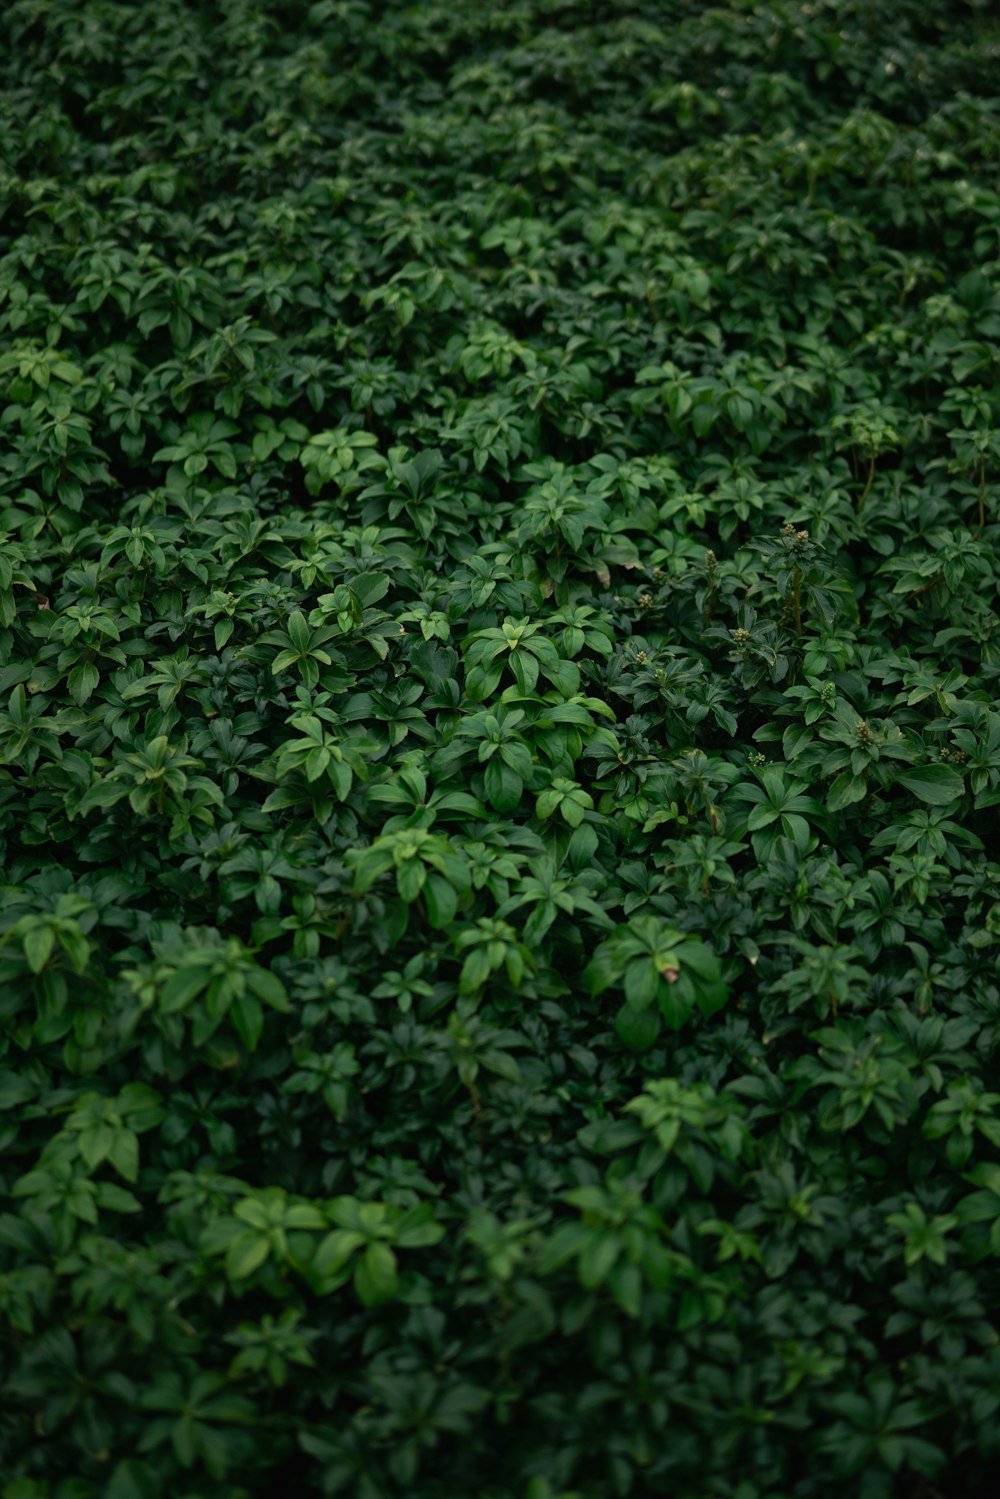 갈색 토양에 녹색 잎